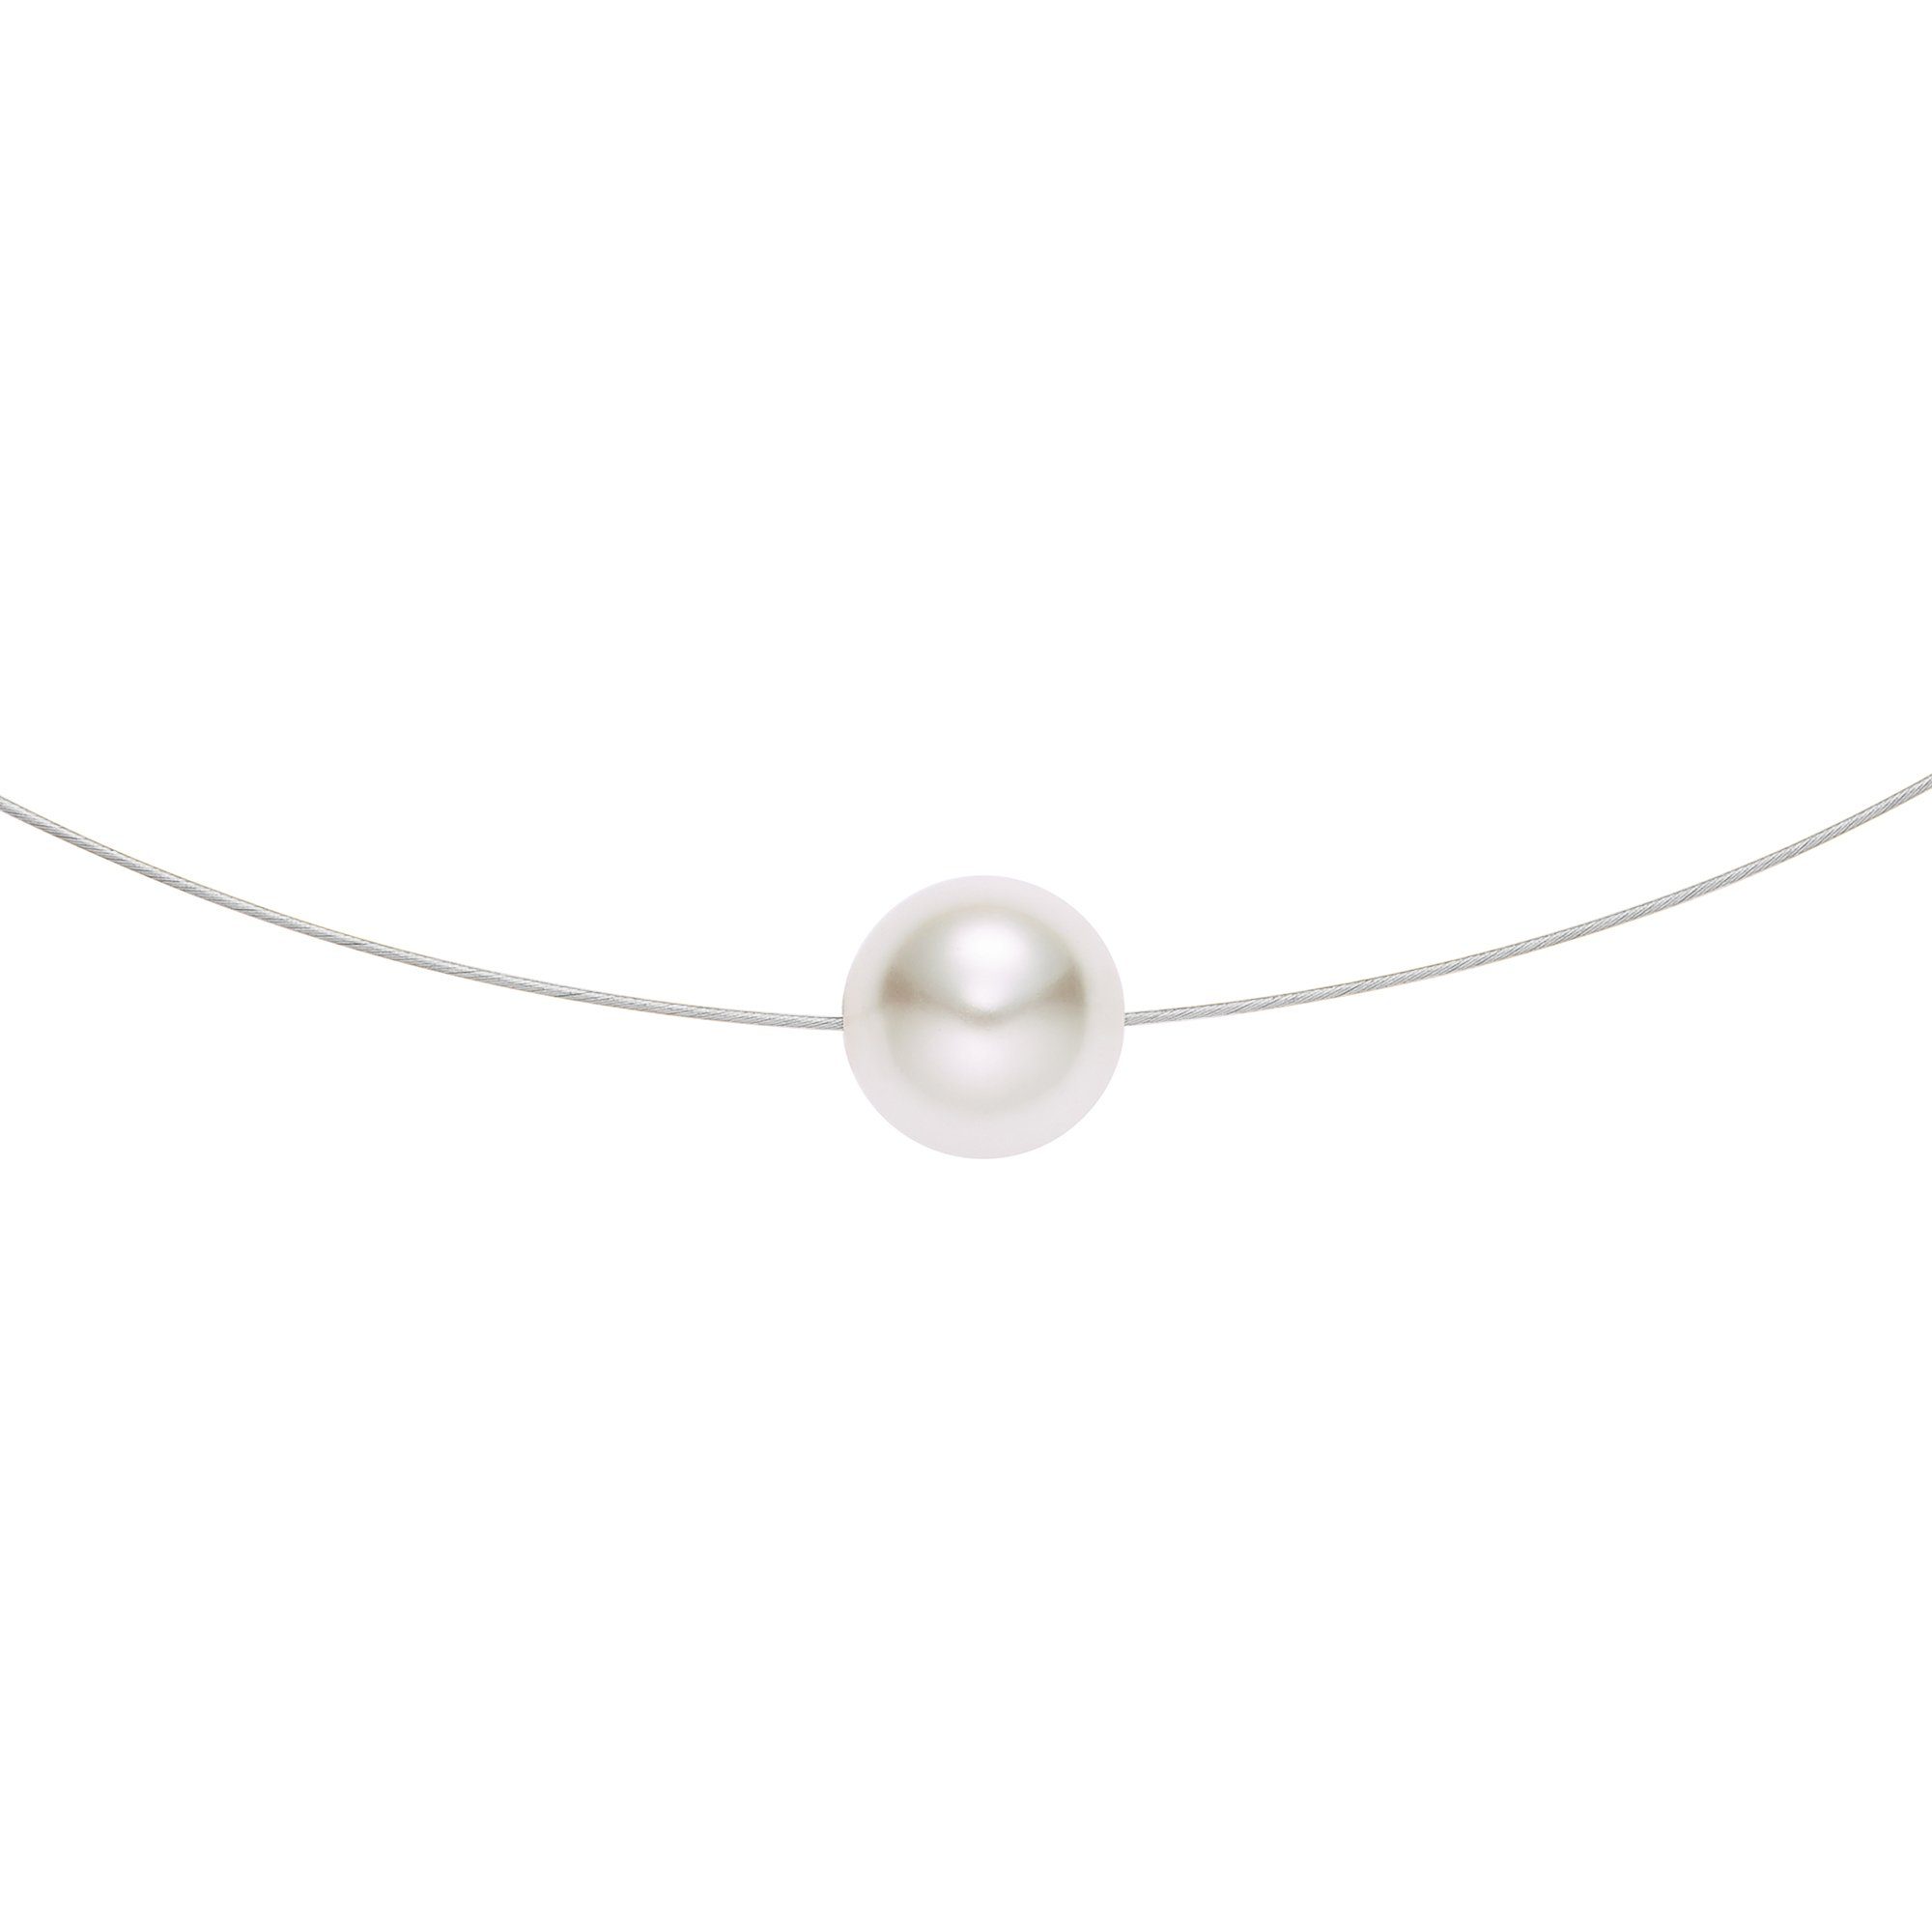 Weiß Single (inkl. einer Florere Perle mit Heideman Geschenkverpackung), Collier silberfarben glanzmatt